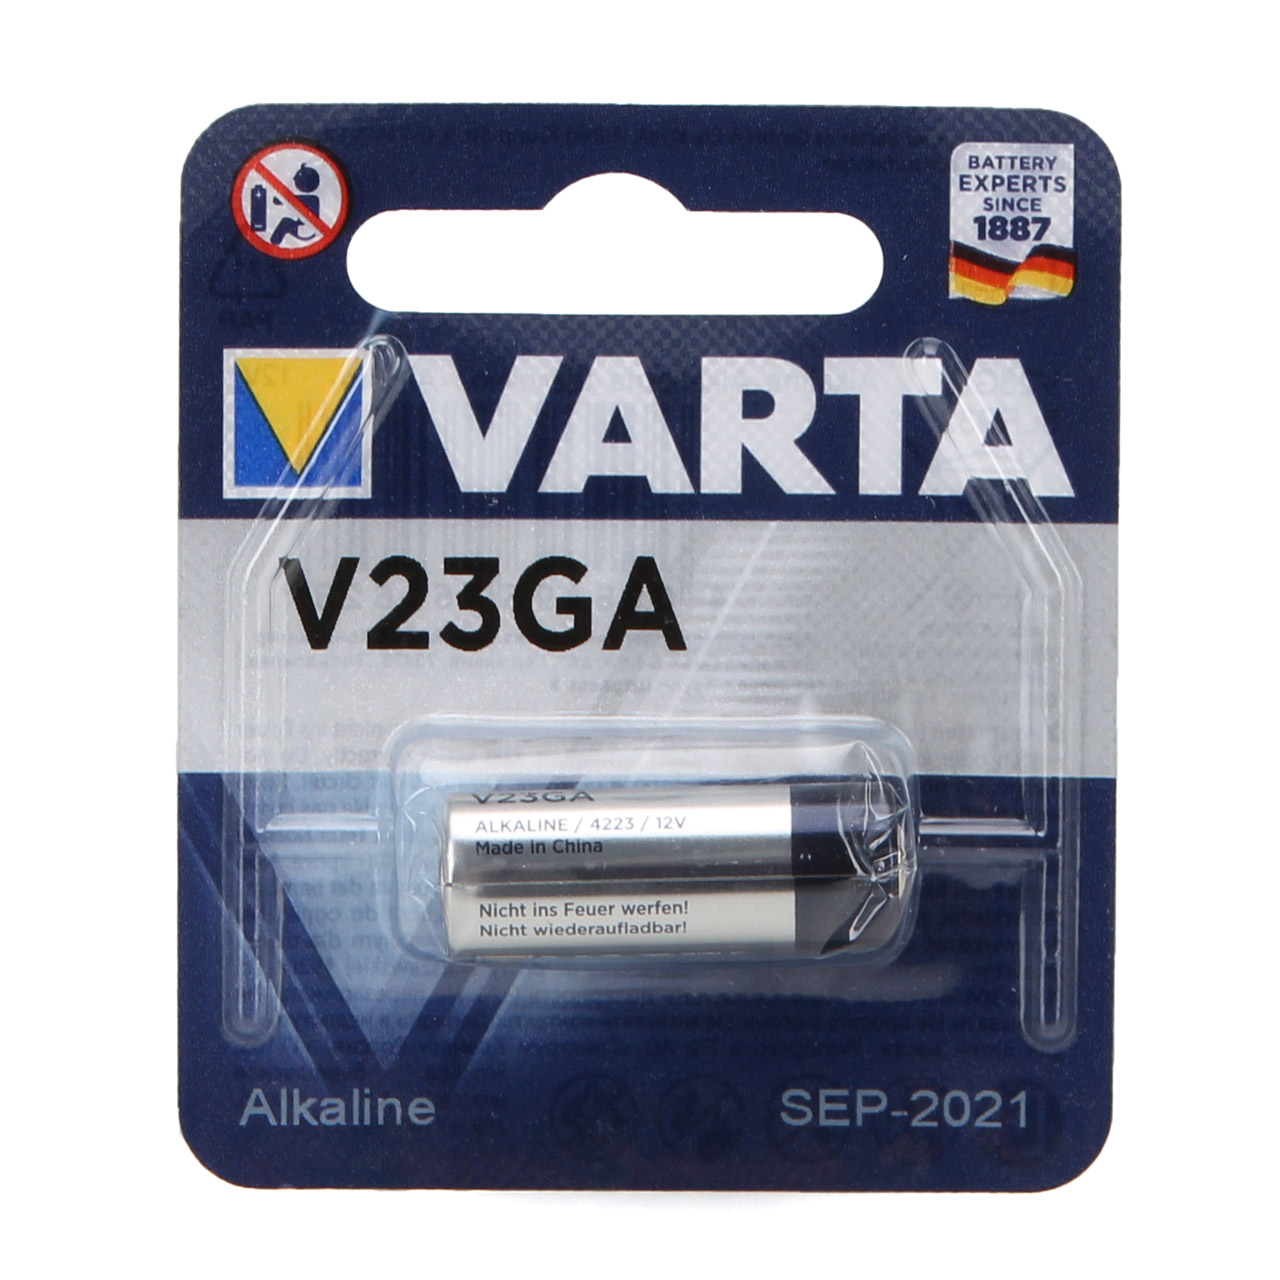 VARTA Batterie Professional Electronics Alkaline V23GA 8LR932 12V